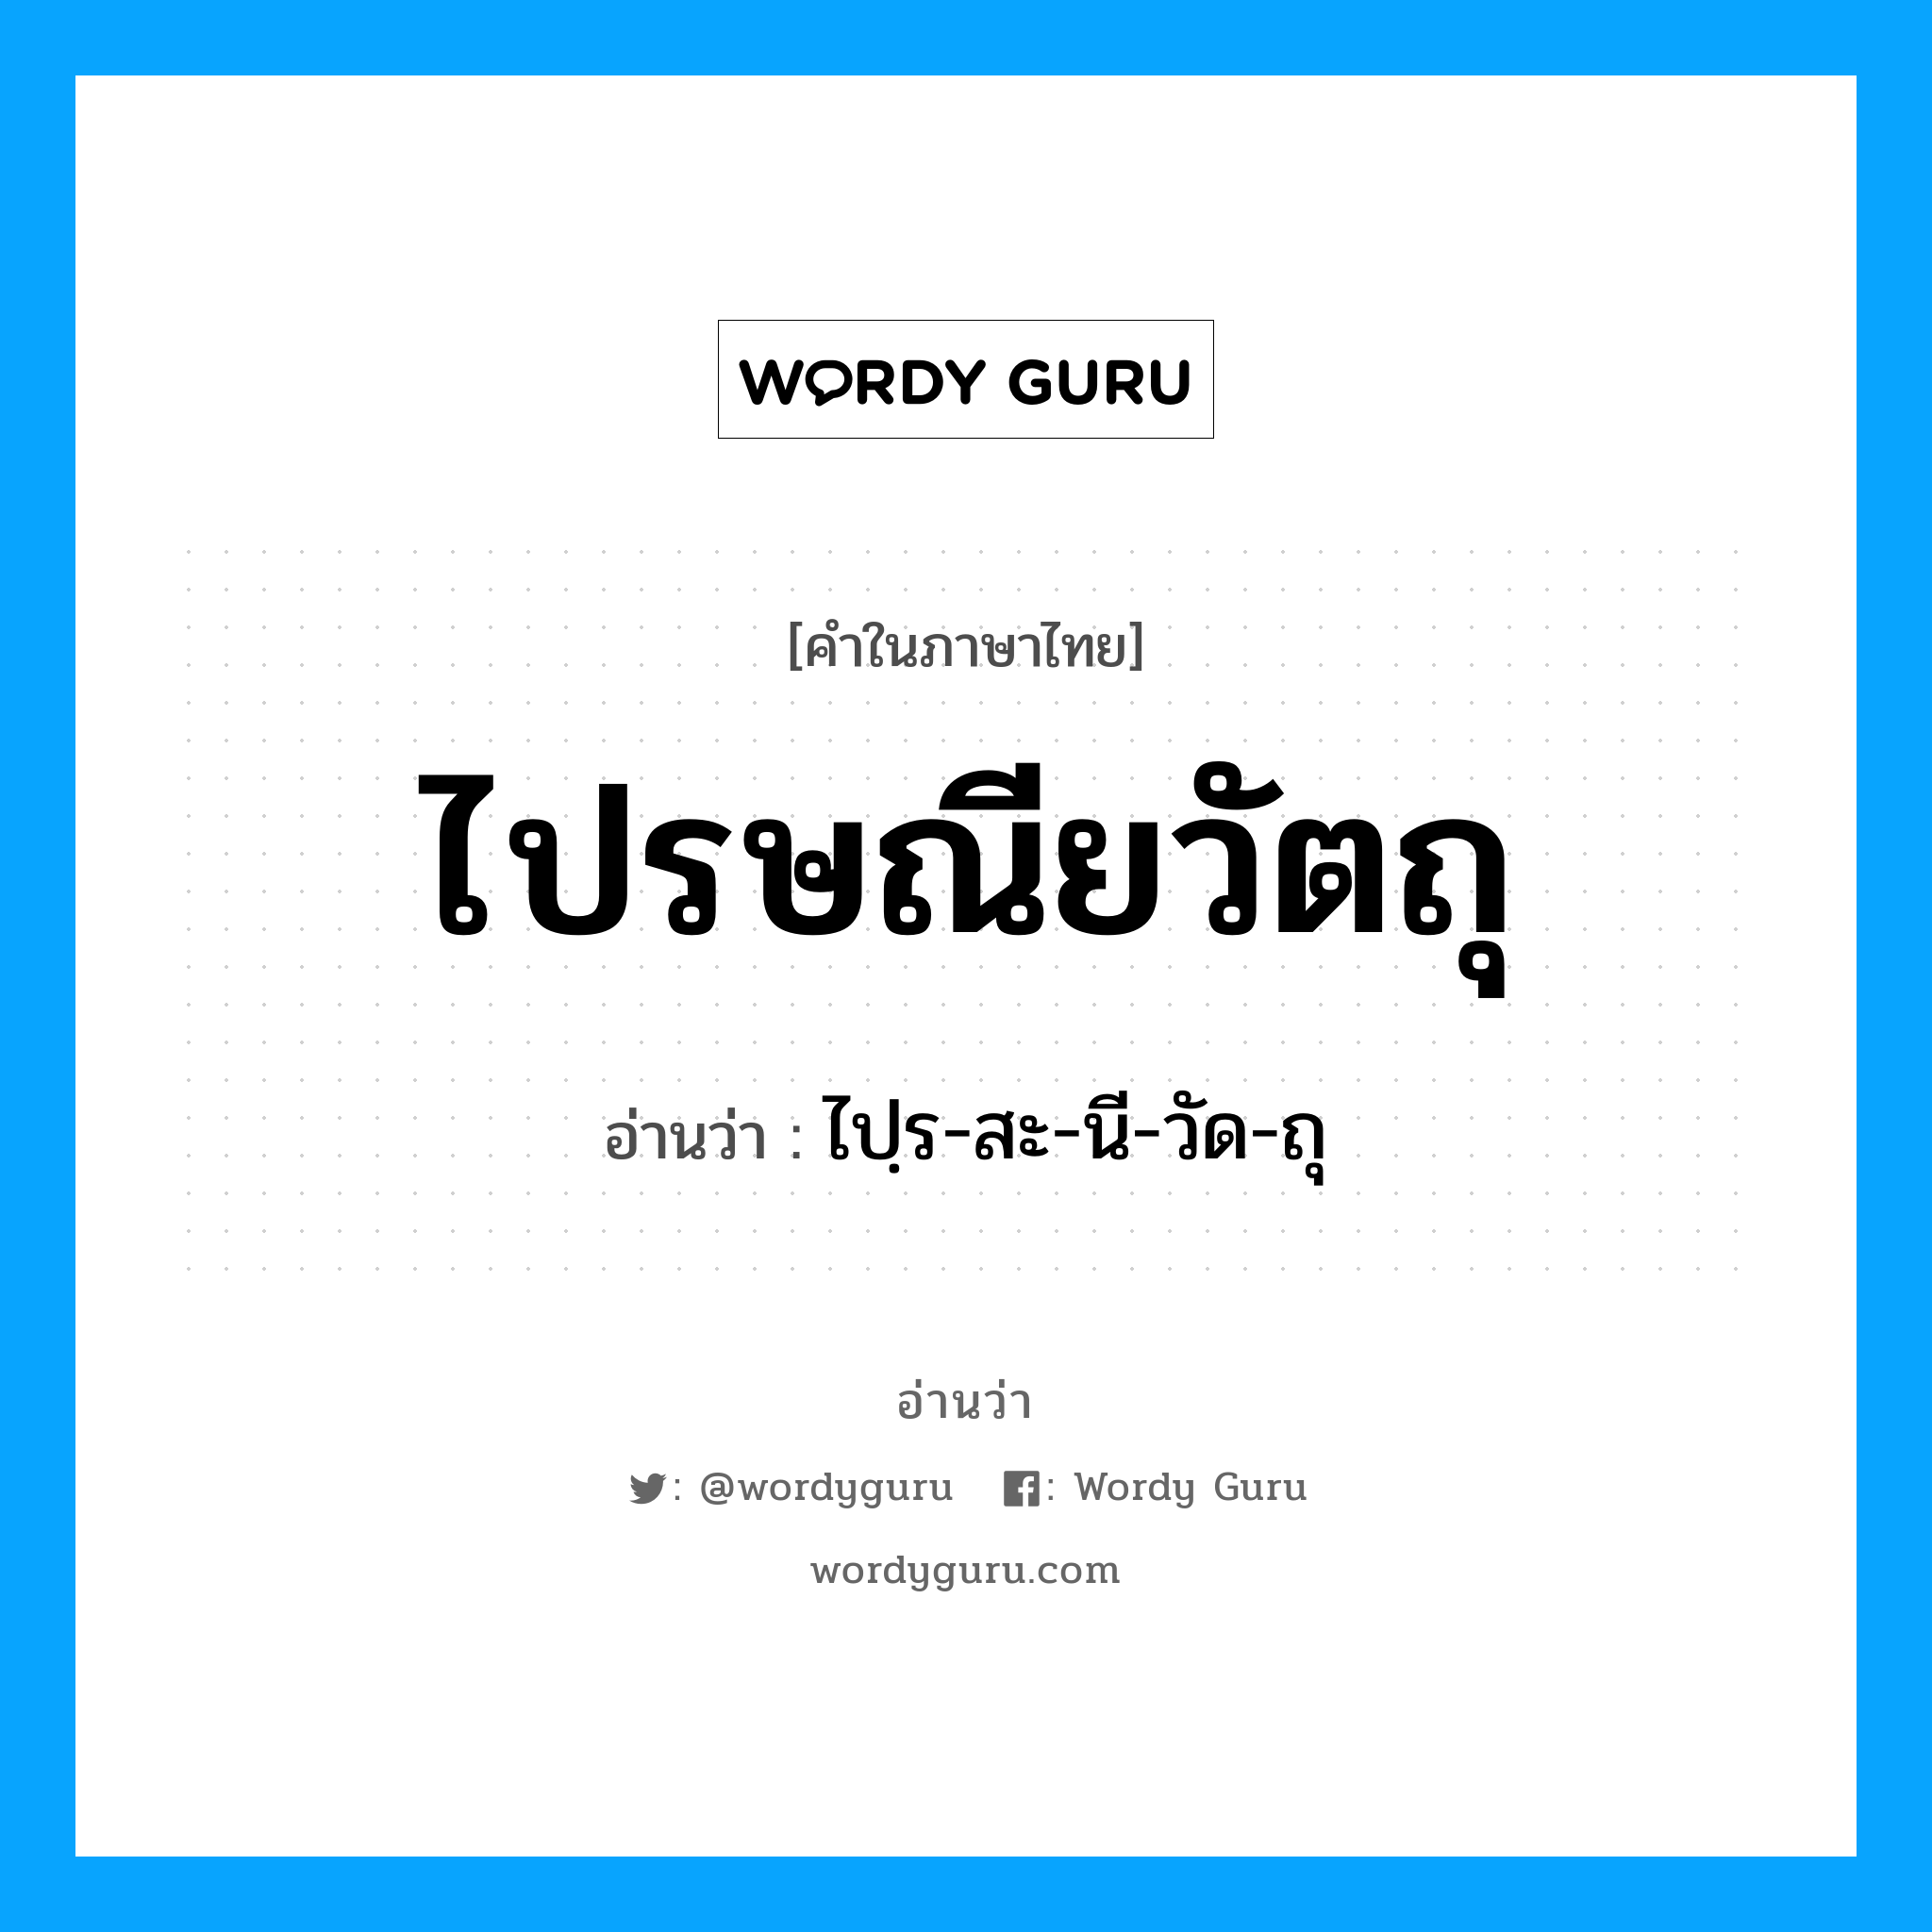 ไปฺร-สะ-นี-วัด-ถุ เป็นคำอ่านของคำไหน?, คำในภาษาไทย ไปฺร-สะ-นี-วัด-ถุ อ่านว่า ไปรษณียวัตถุ